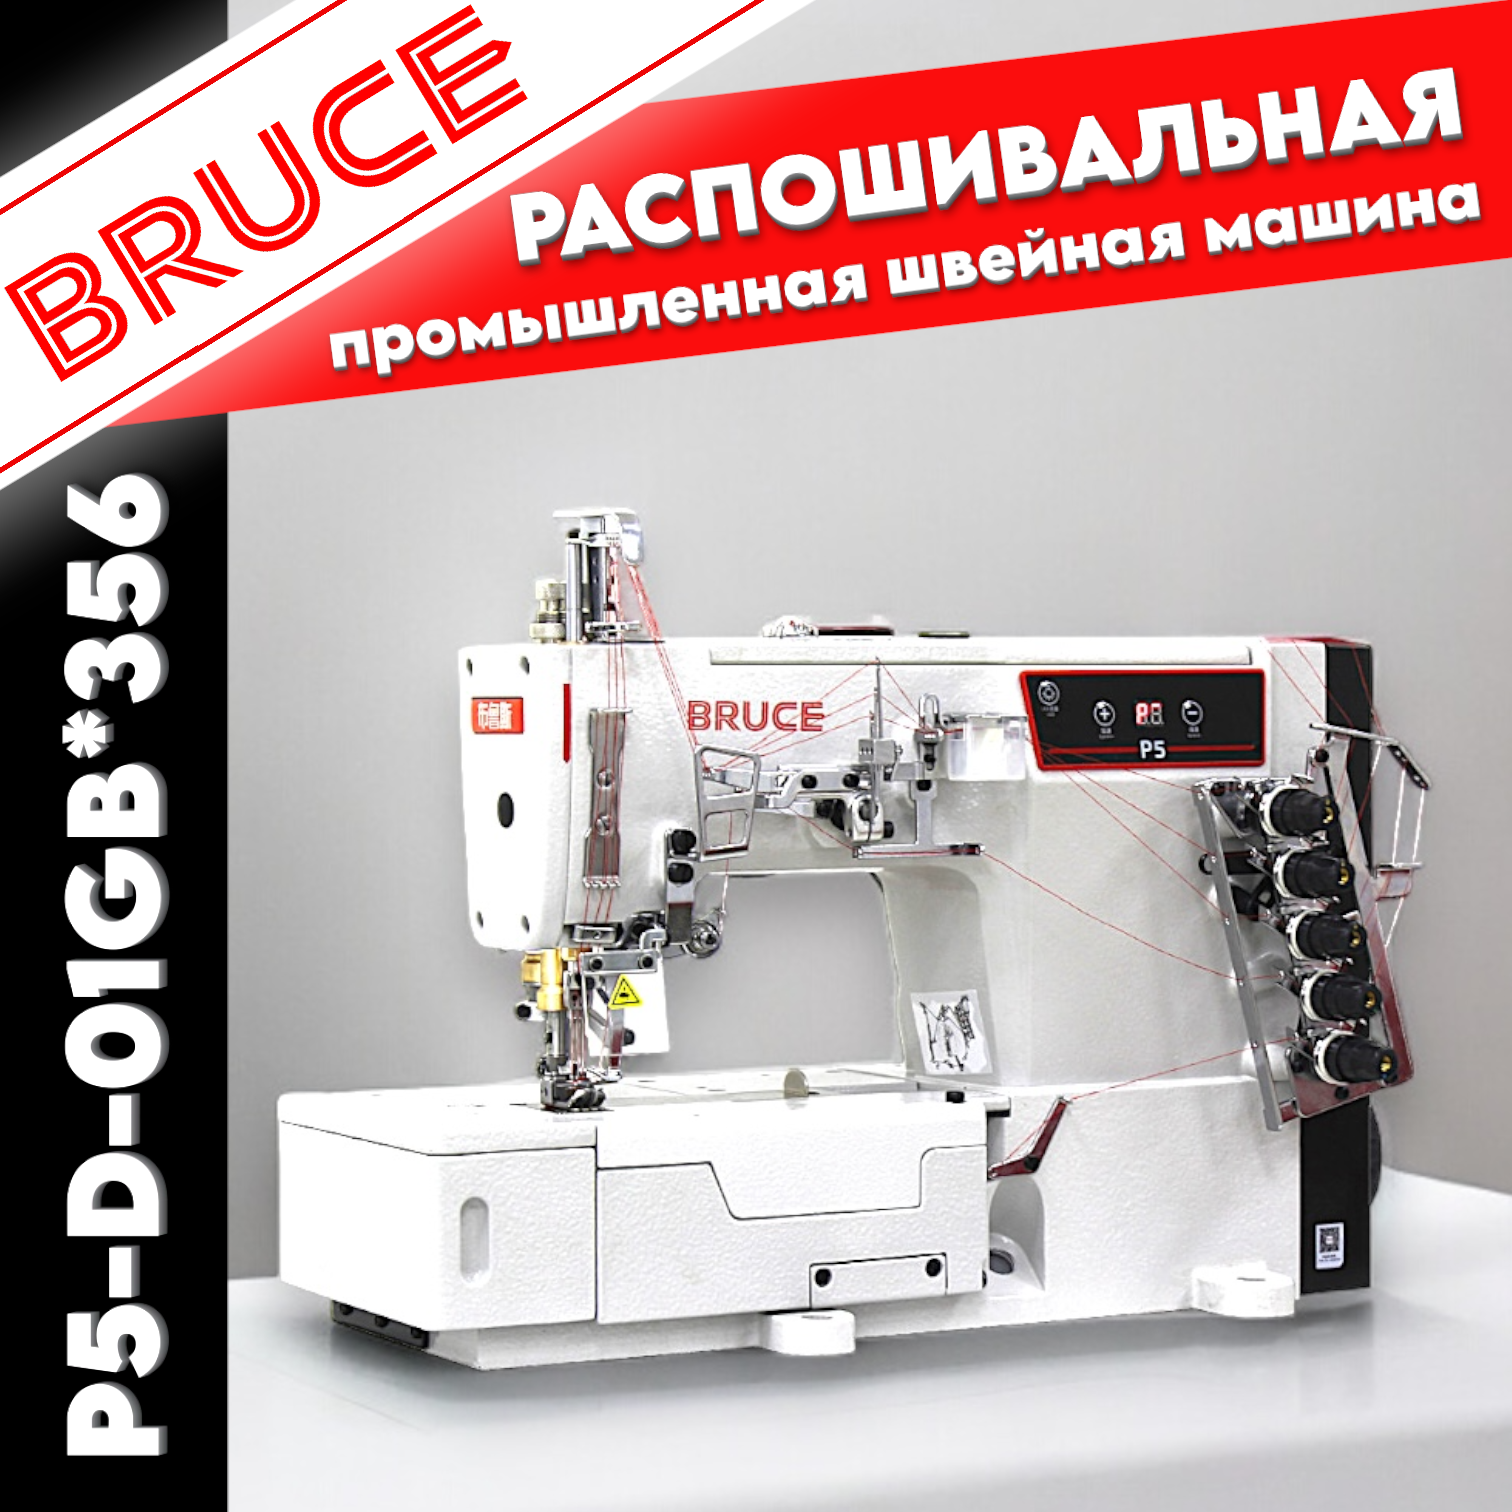 Трехигольная плоскошовная, раcпошивальная промышленная швейная машина Bruce P5 со столом